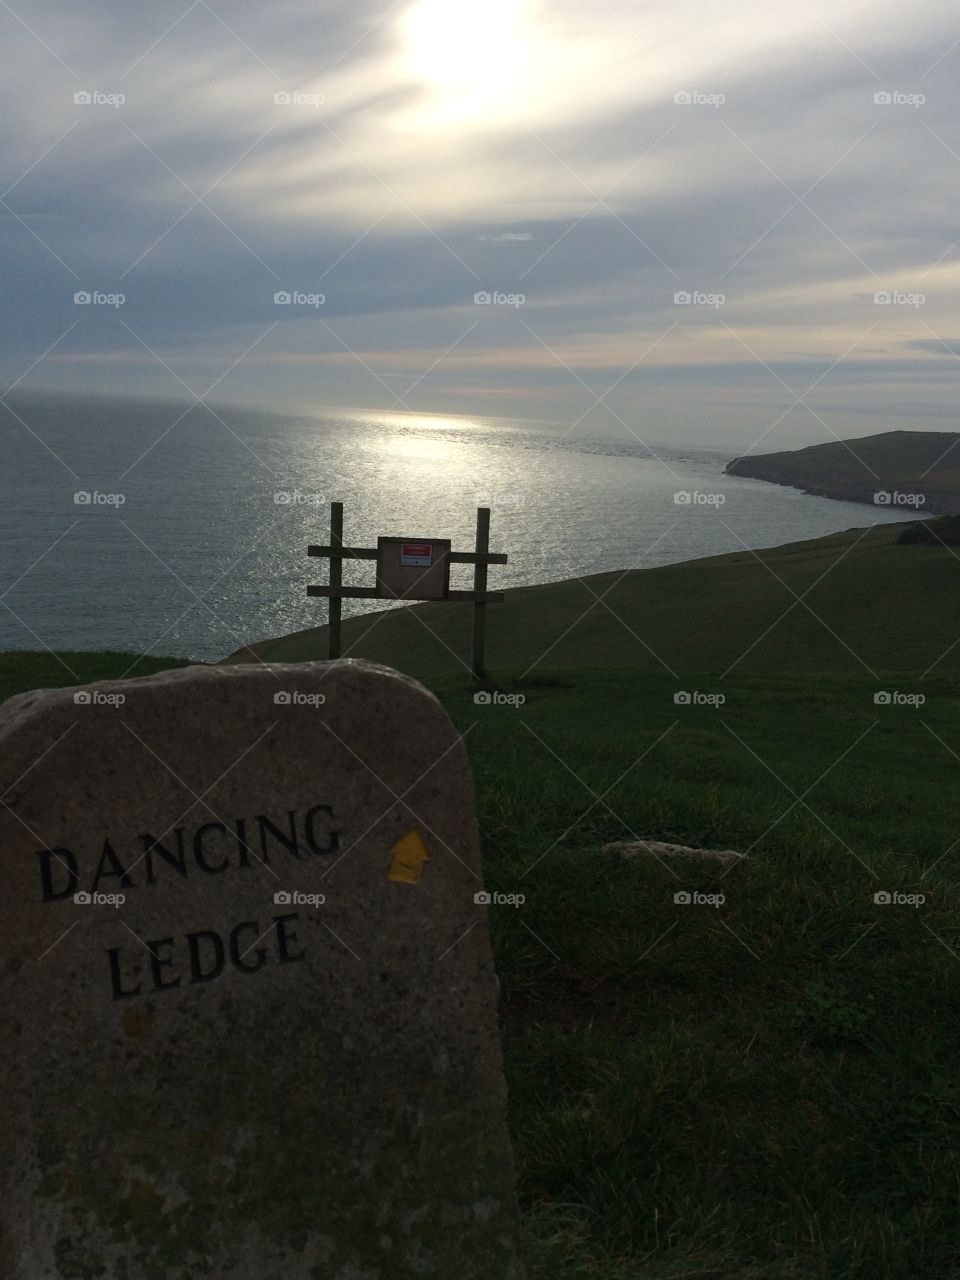 Dancing Ledge, Dorset